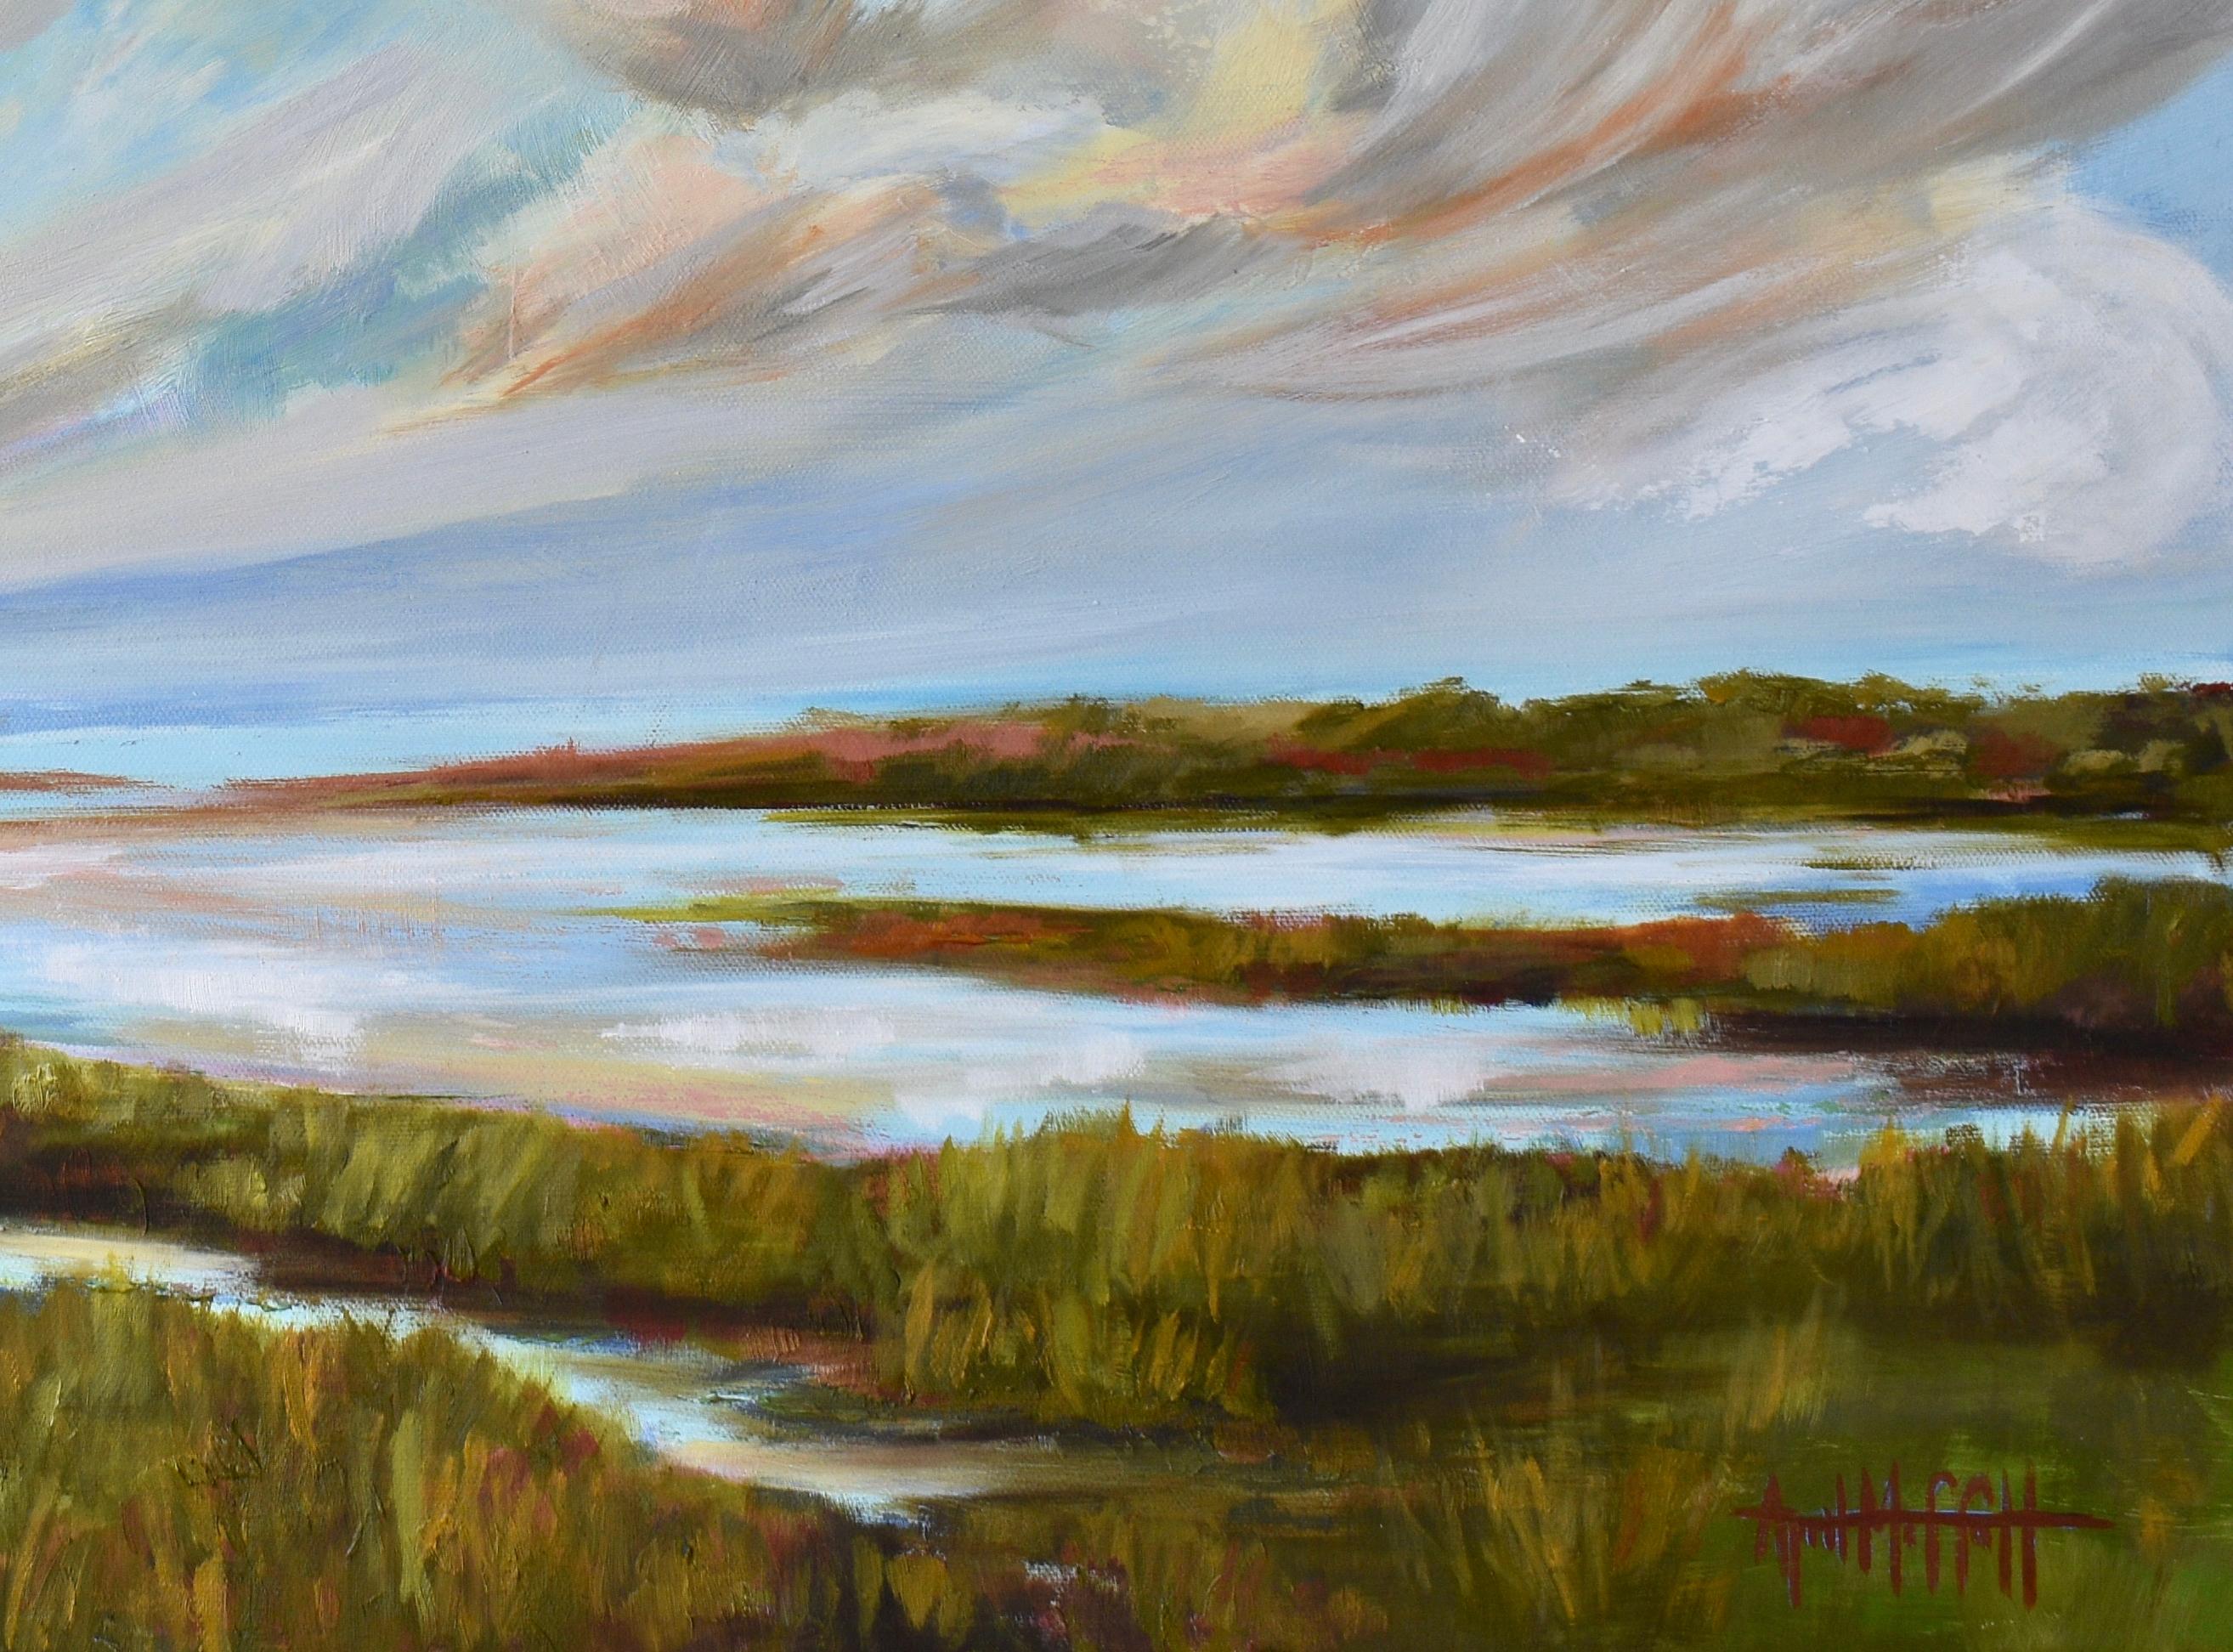 Marais d'hiver chaud, peinture originale impressionniste de paysage, 2022
24